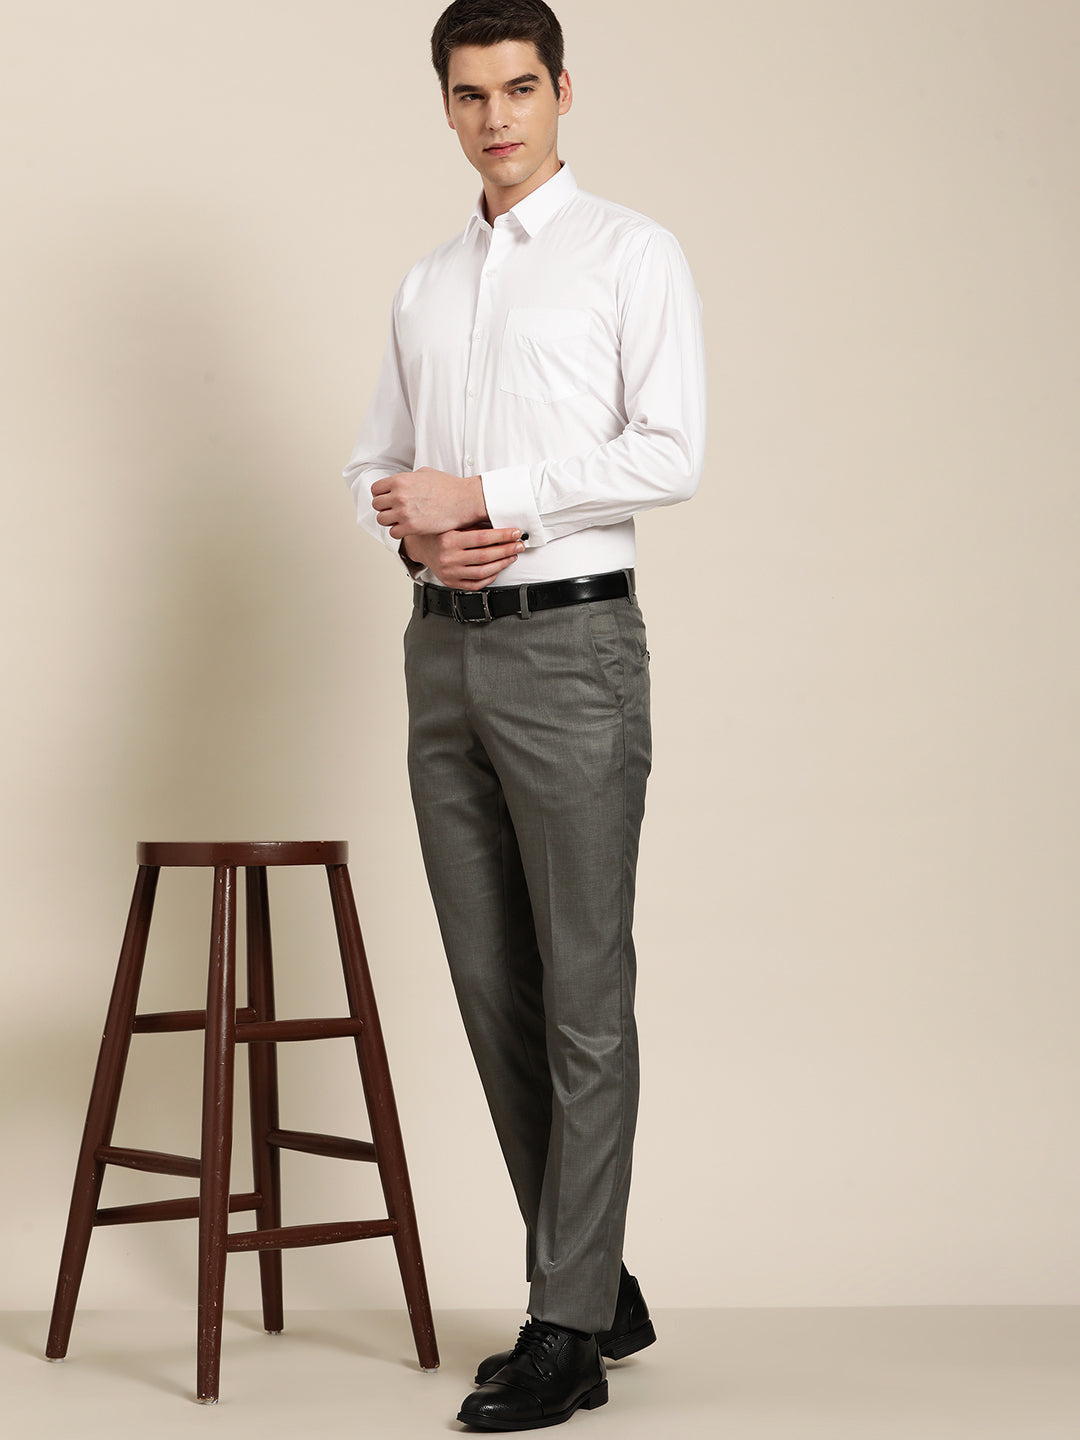 Men Elegant Shirt and Trouser for Office Wear Mens Formal - Etsy Hong Kong